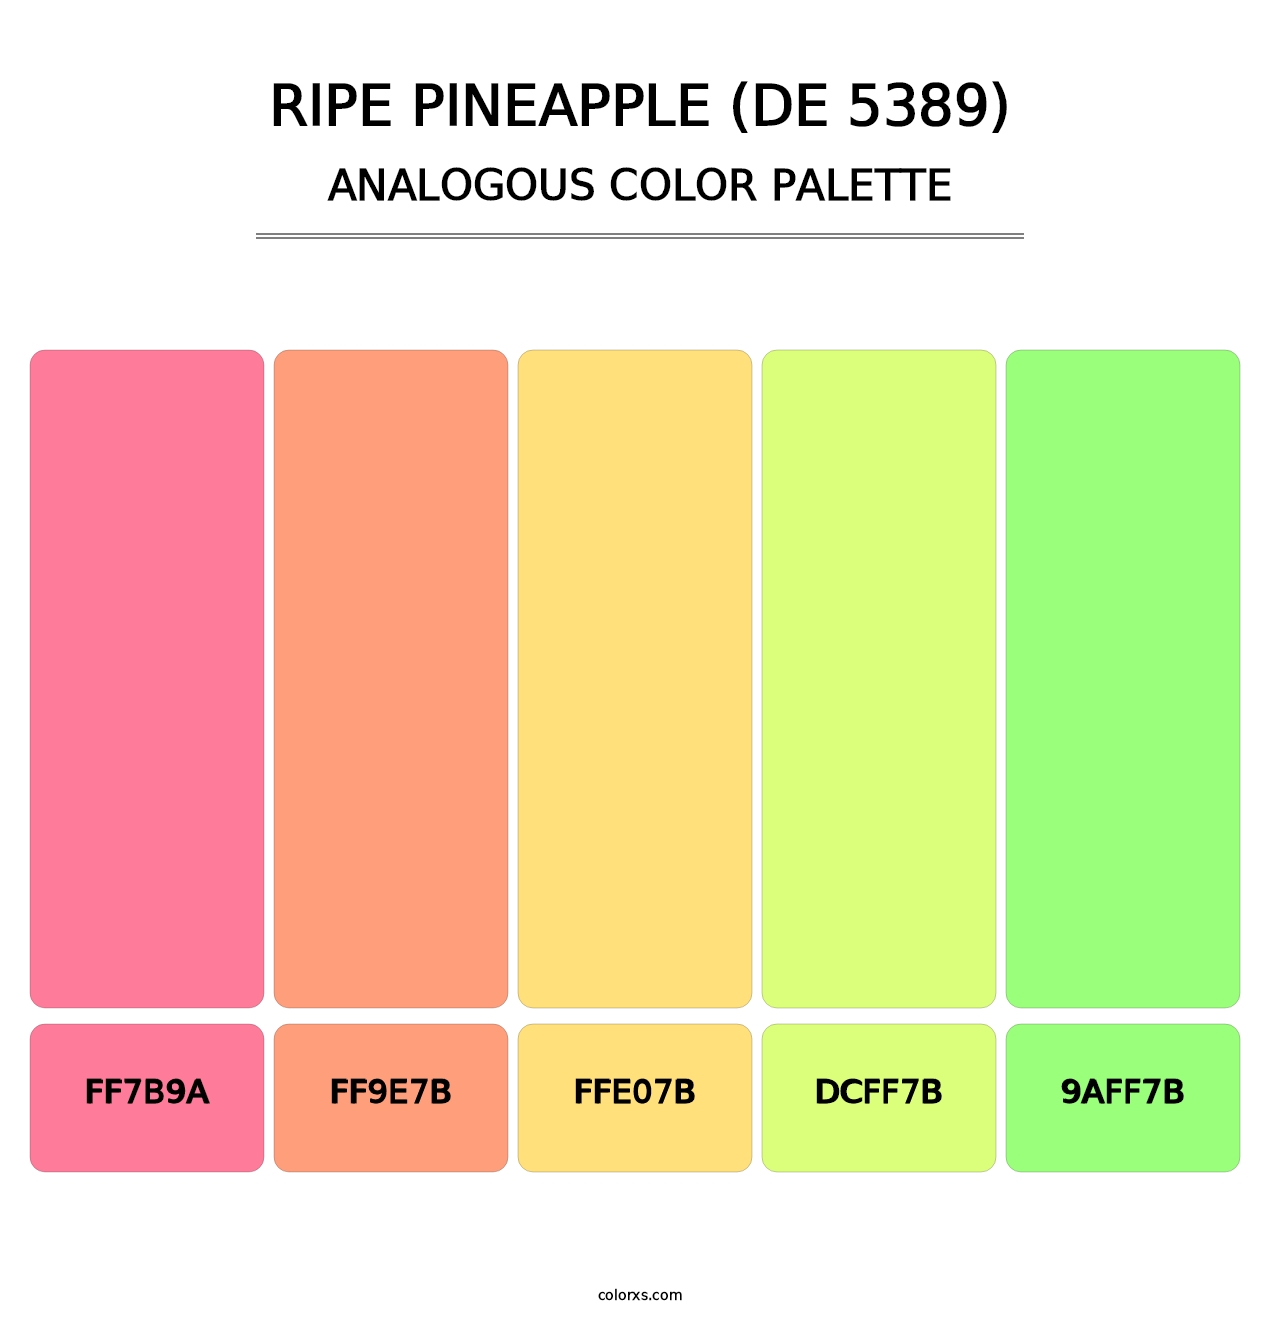 Ripe Pineapple (DE 5389) - Analogous Color Palette